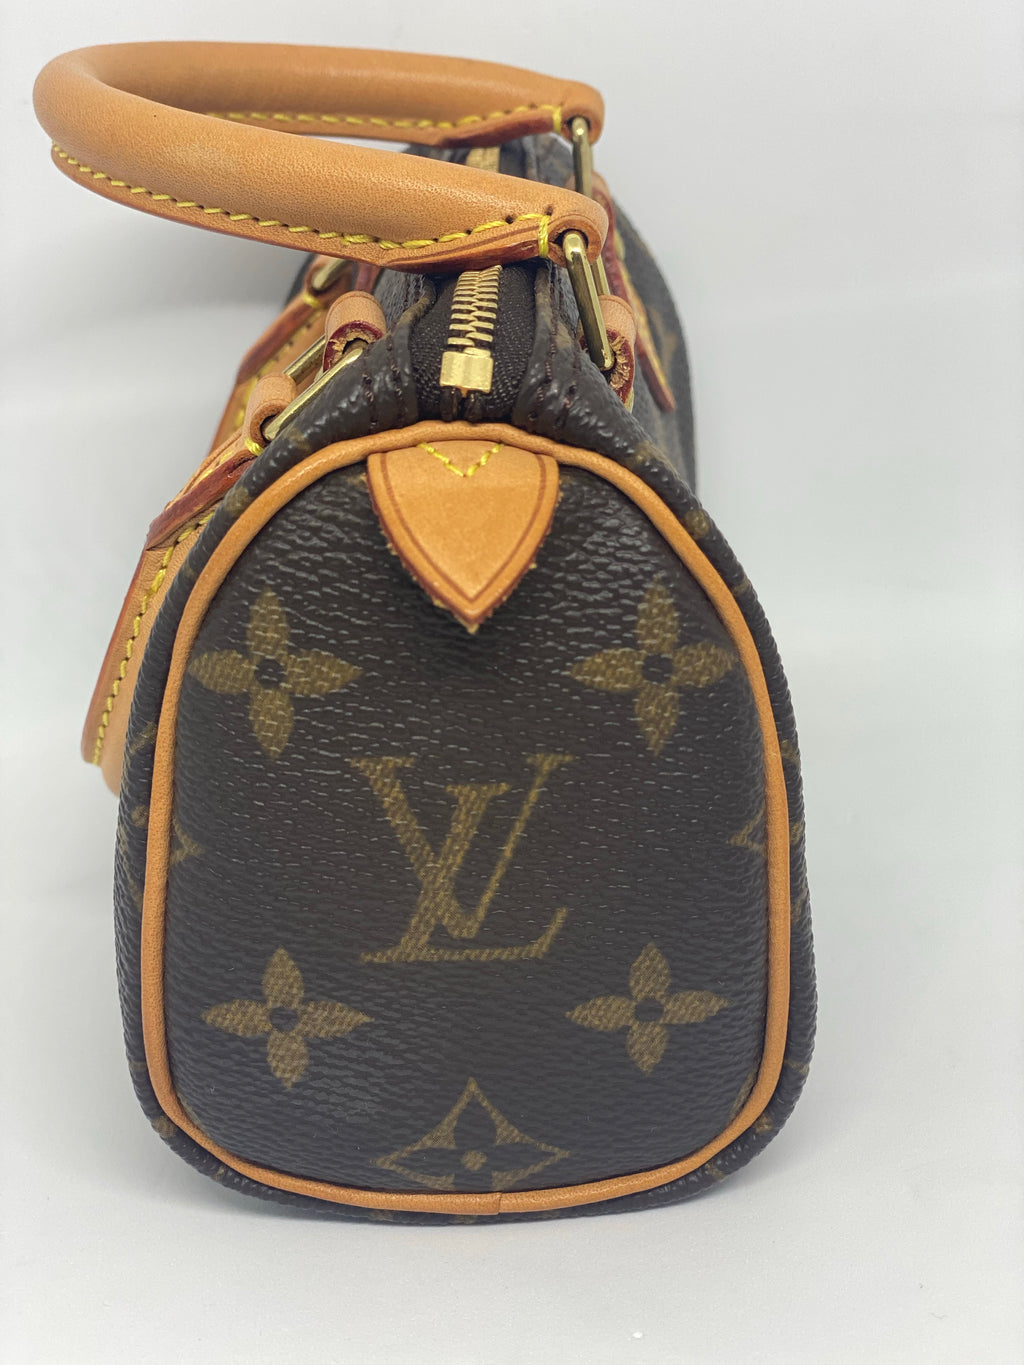 Louis Vuitton release mini bracelet bag